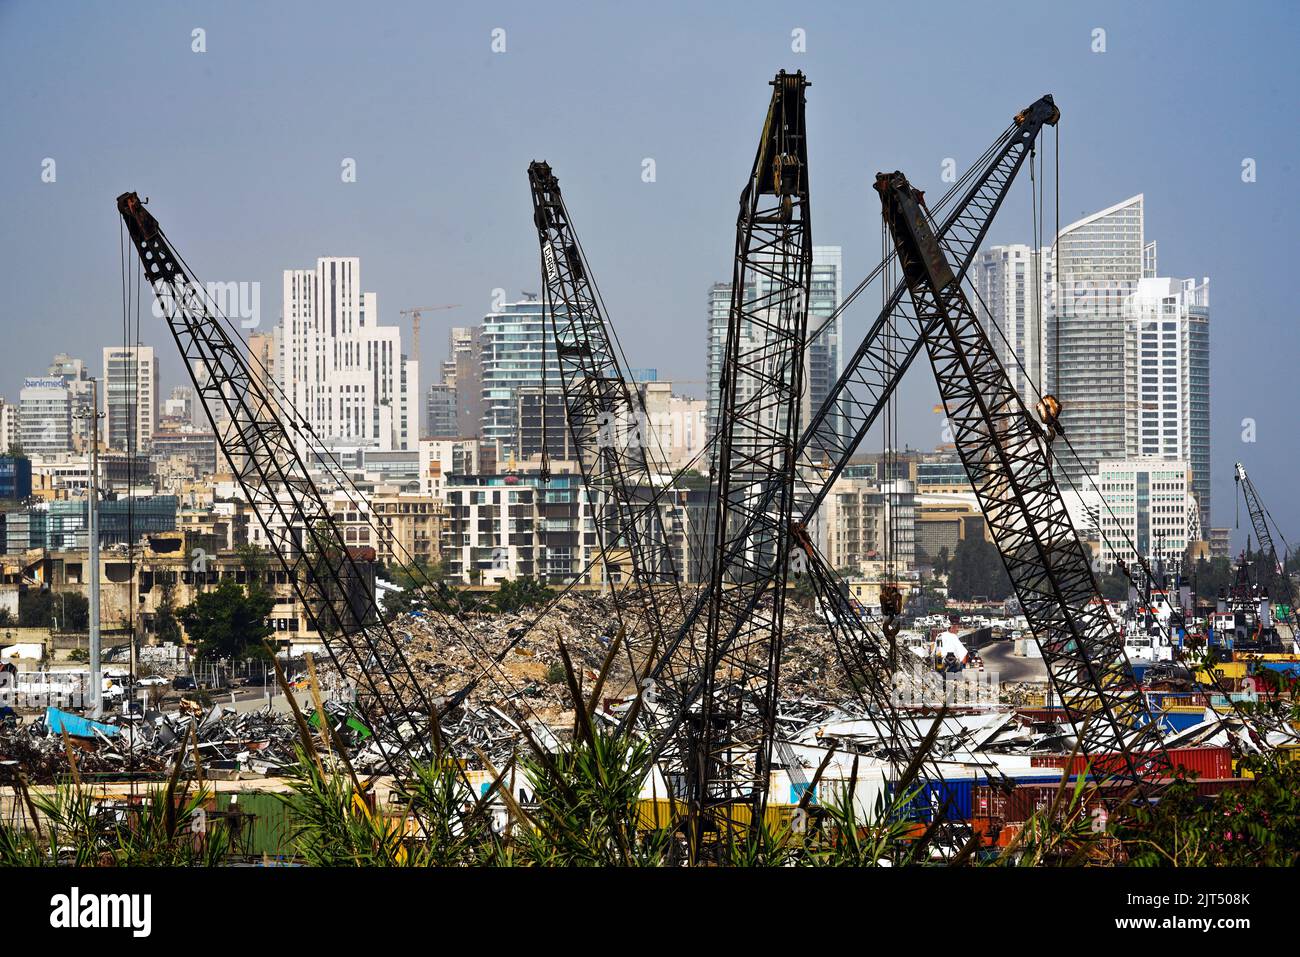 Beirut, Libano: I grattacieli del moderno centro di Beirut possono essere visti dietro le gru e i detriti della massiccia esplosione che ha devastato 2.750 tonnellate di nitrato di ammonio immagazzinato nel porto della città il 8/4/2020 Foto Stock